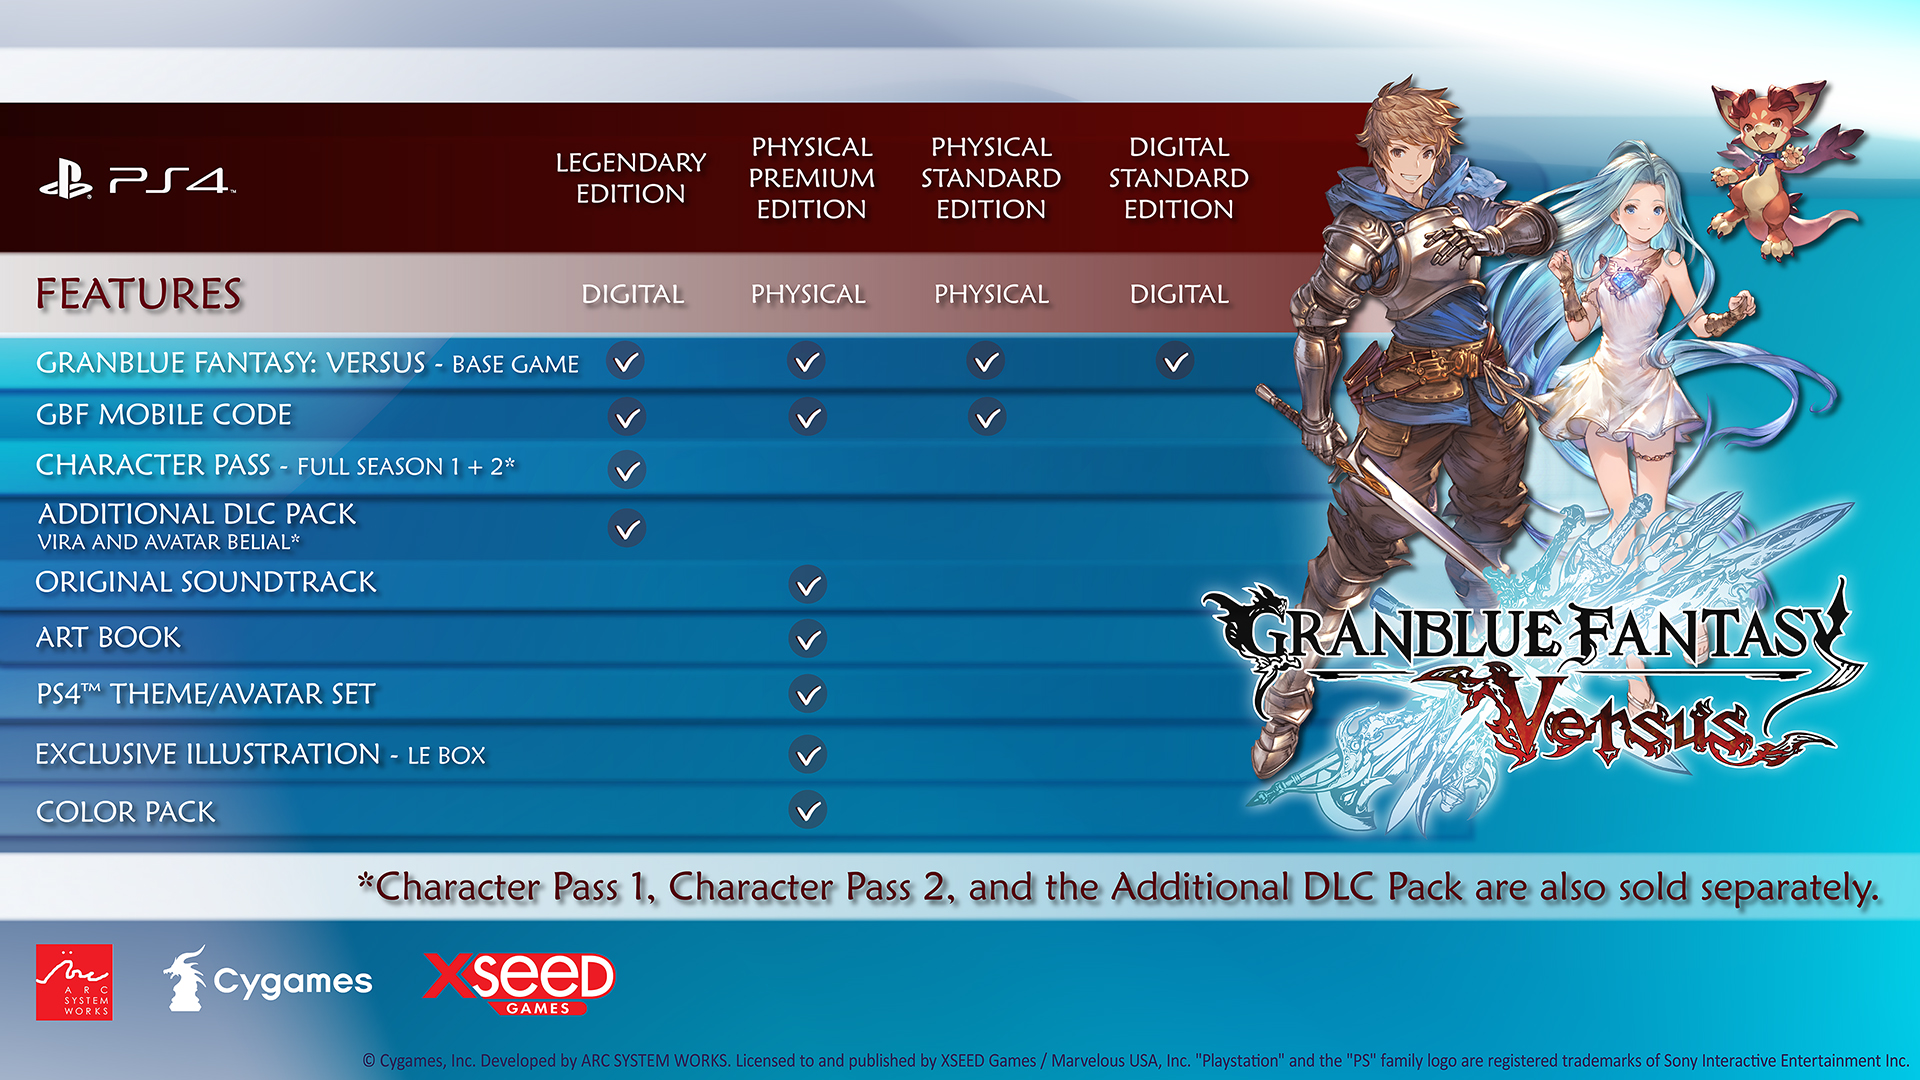 granblue fantasy versus: Granblue Fantasy Versus: Rising DLC